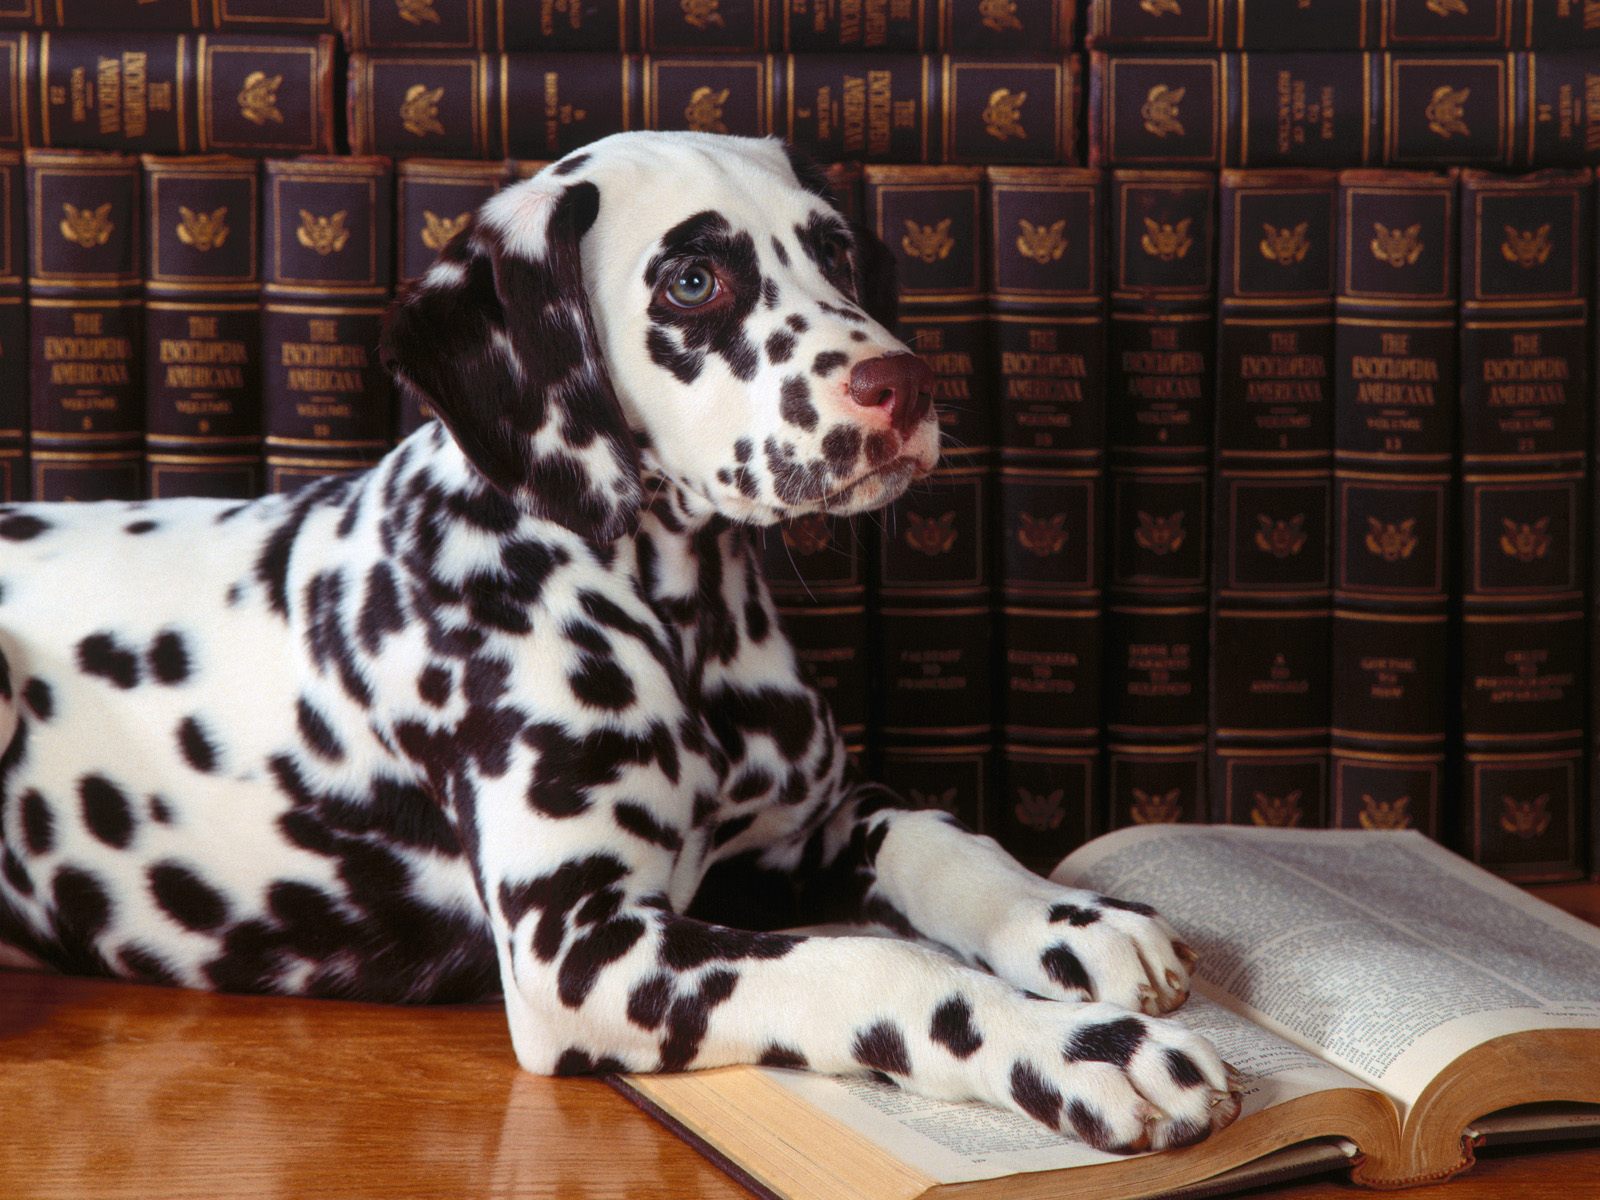 Умный щенок долматинец читает книги Собаки картинки, обои рабочий стол